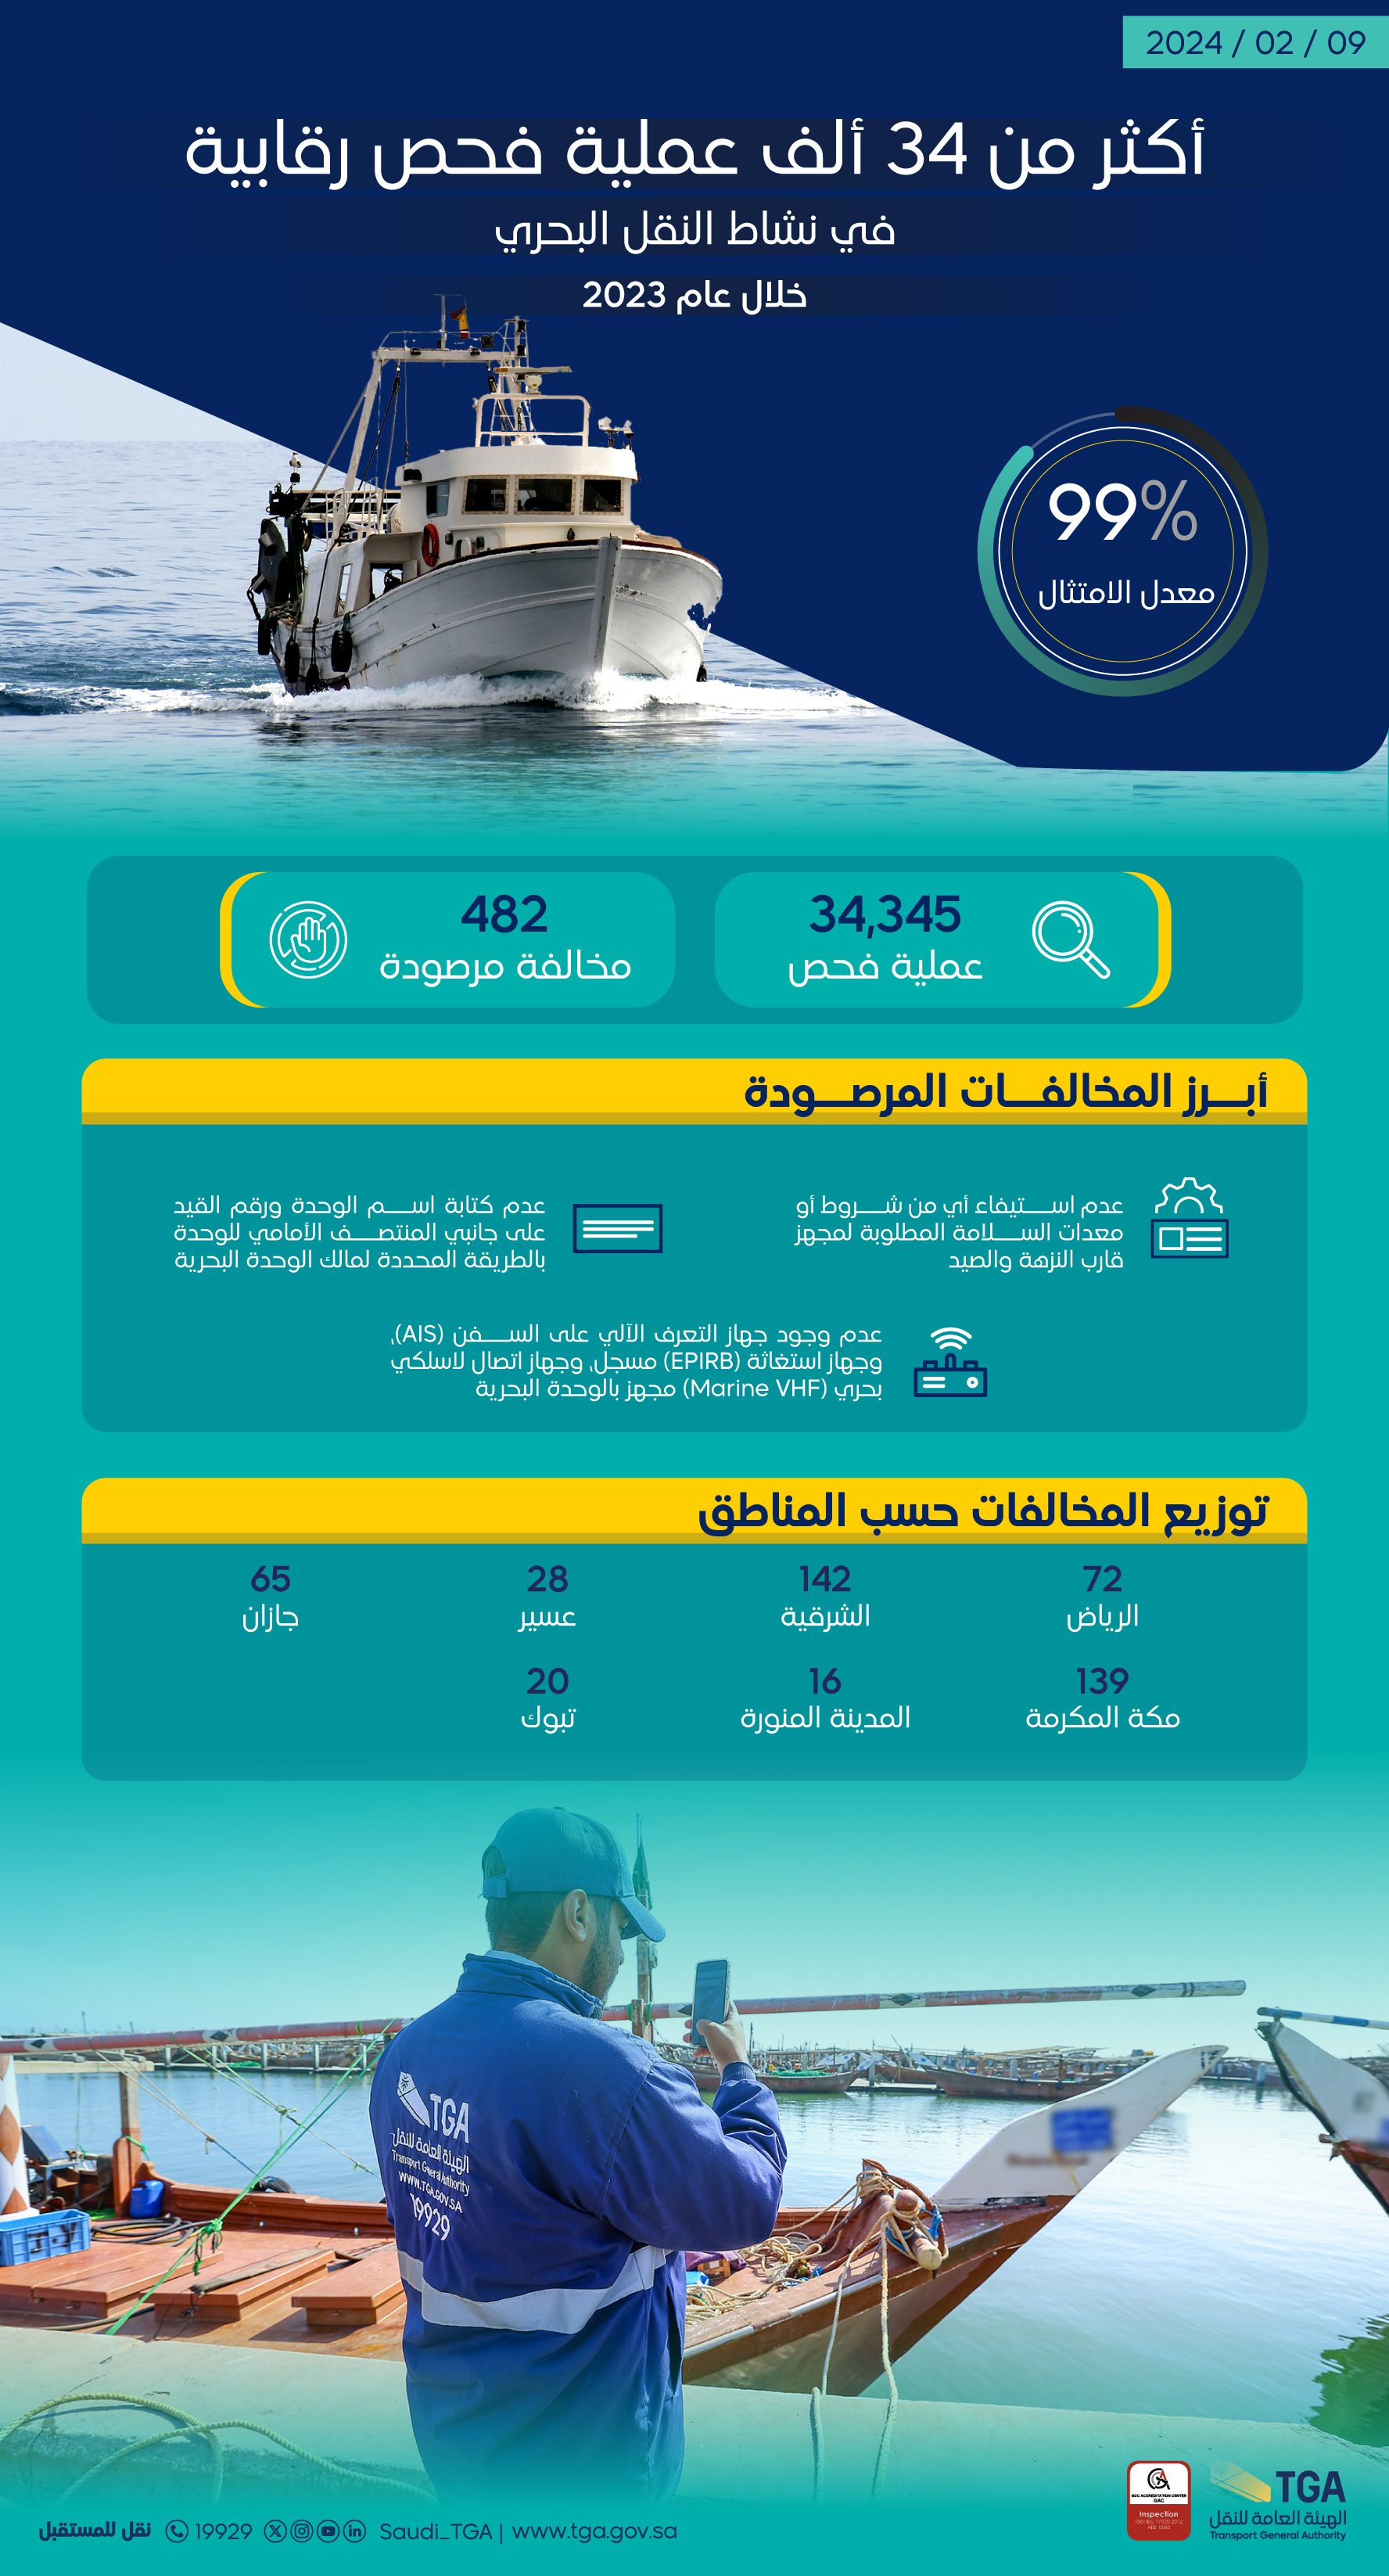 الهيئة العامة للنقل : أكثر من 34 ألف عملية فحص رقابية في نشاط النقل البحري خلال عام 2023 م